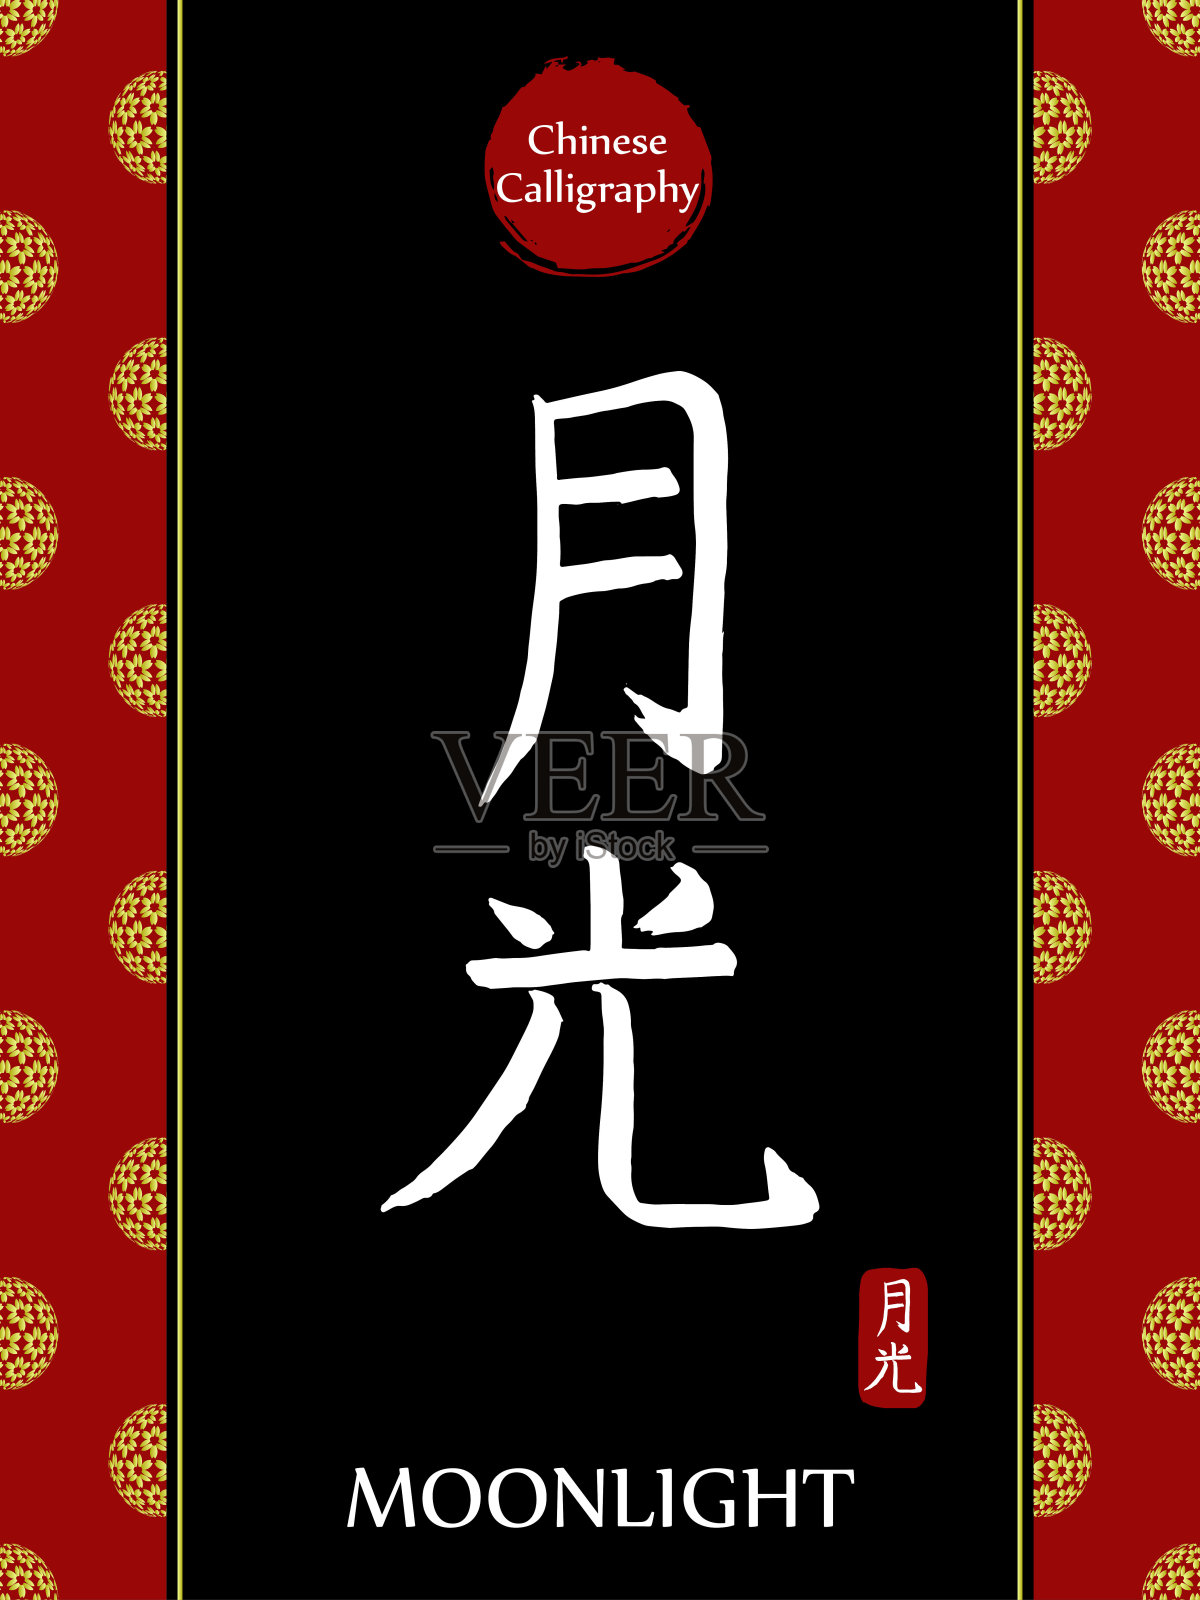 中国书法象形文字的翻译:月光。亚洲金花球农历新年图案。向量中国符号在黑色背景。手绘图画文字。毛笔书法插画图片素材